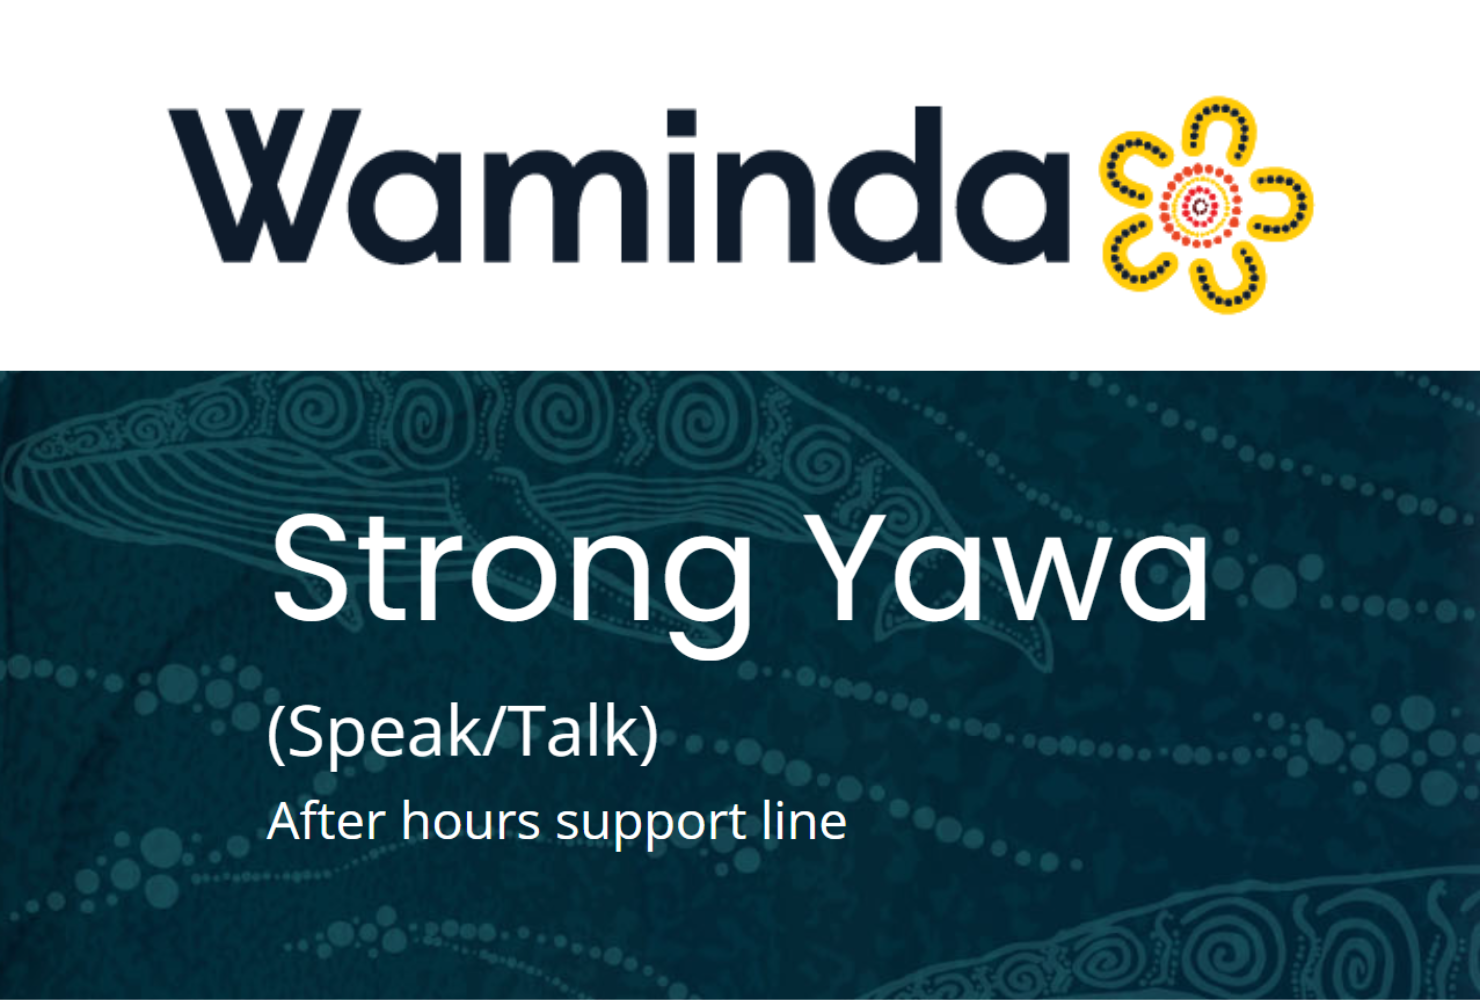 Waminda Strong Yawa logo